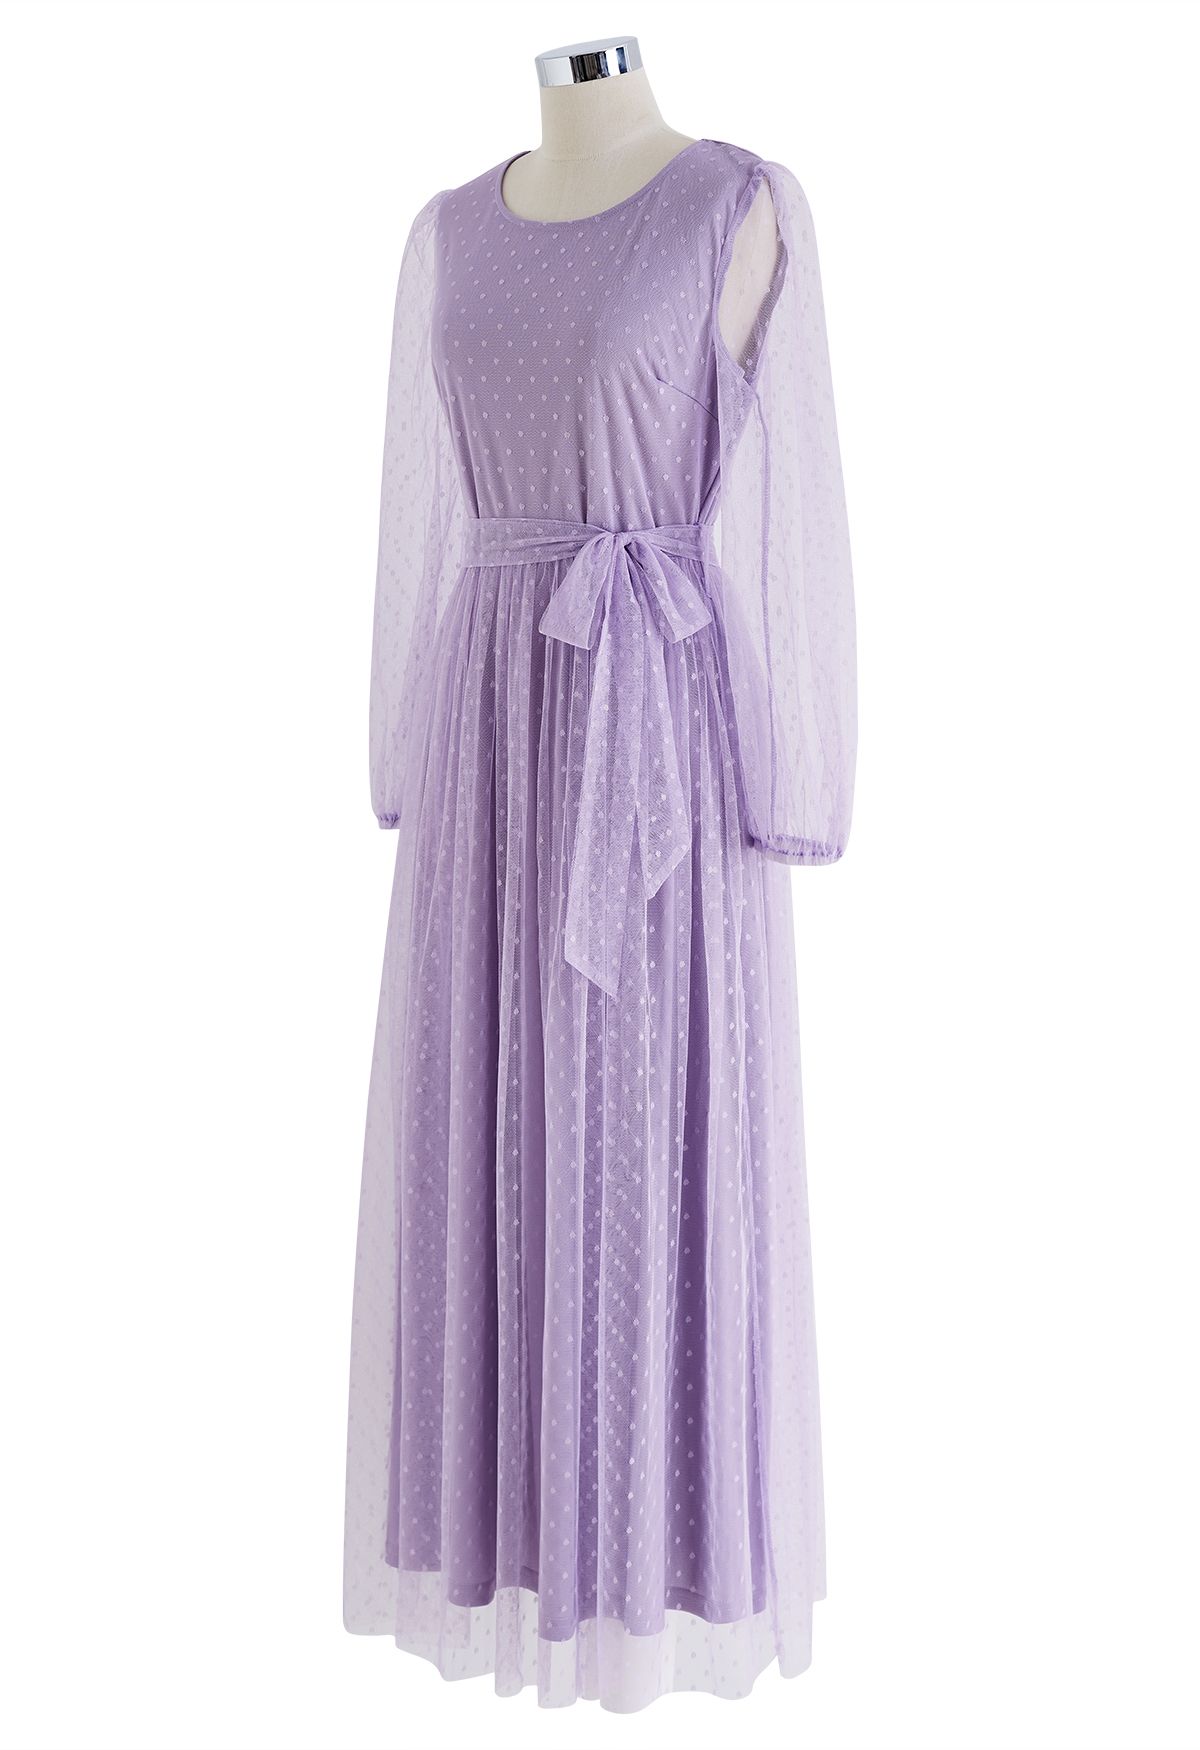 Precioso vestido largo de malla con puntos en lila